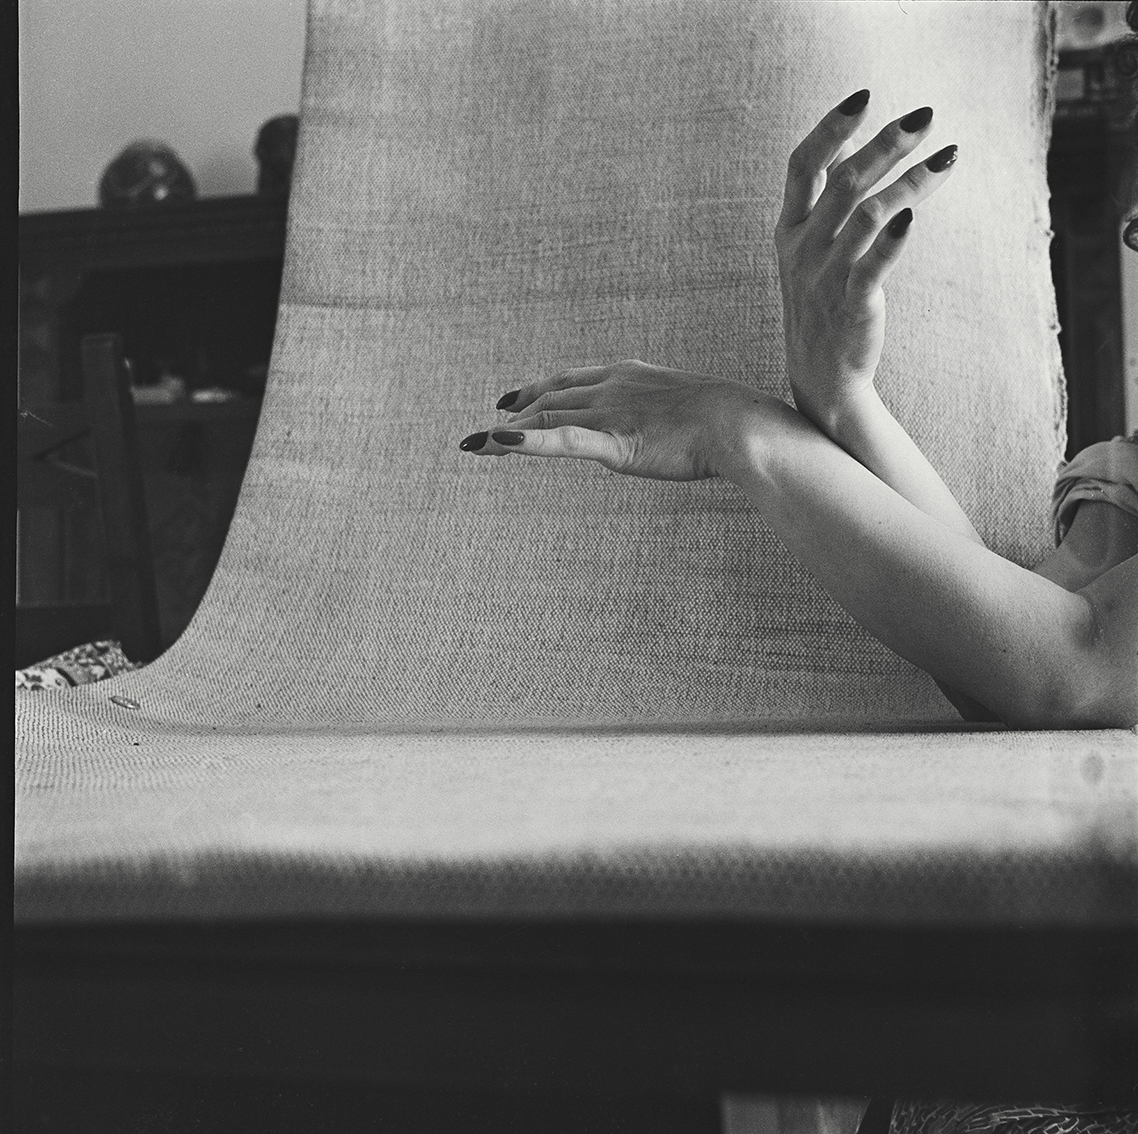 Colette Baltzakis (1926-2014) :: Hands # 5, Paris, 1952. | src Colette Baltzakis Collection at eye-eye